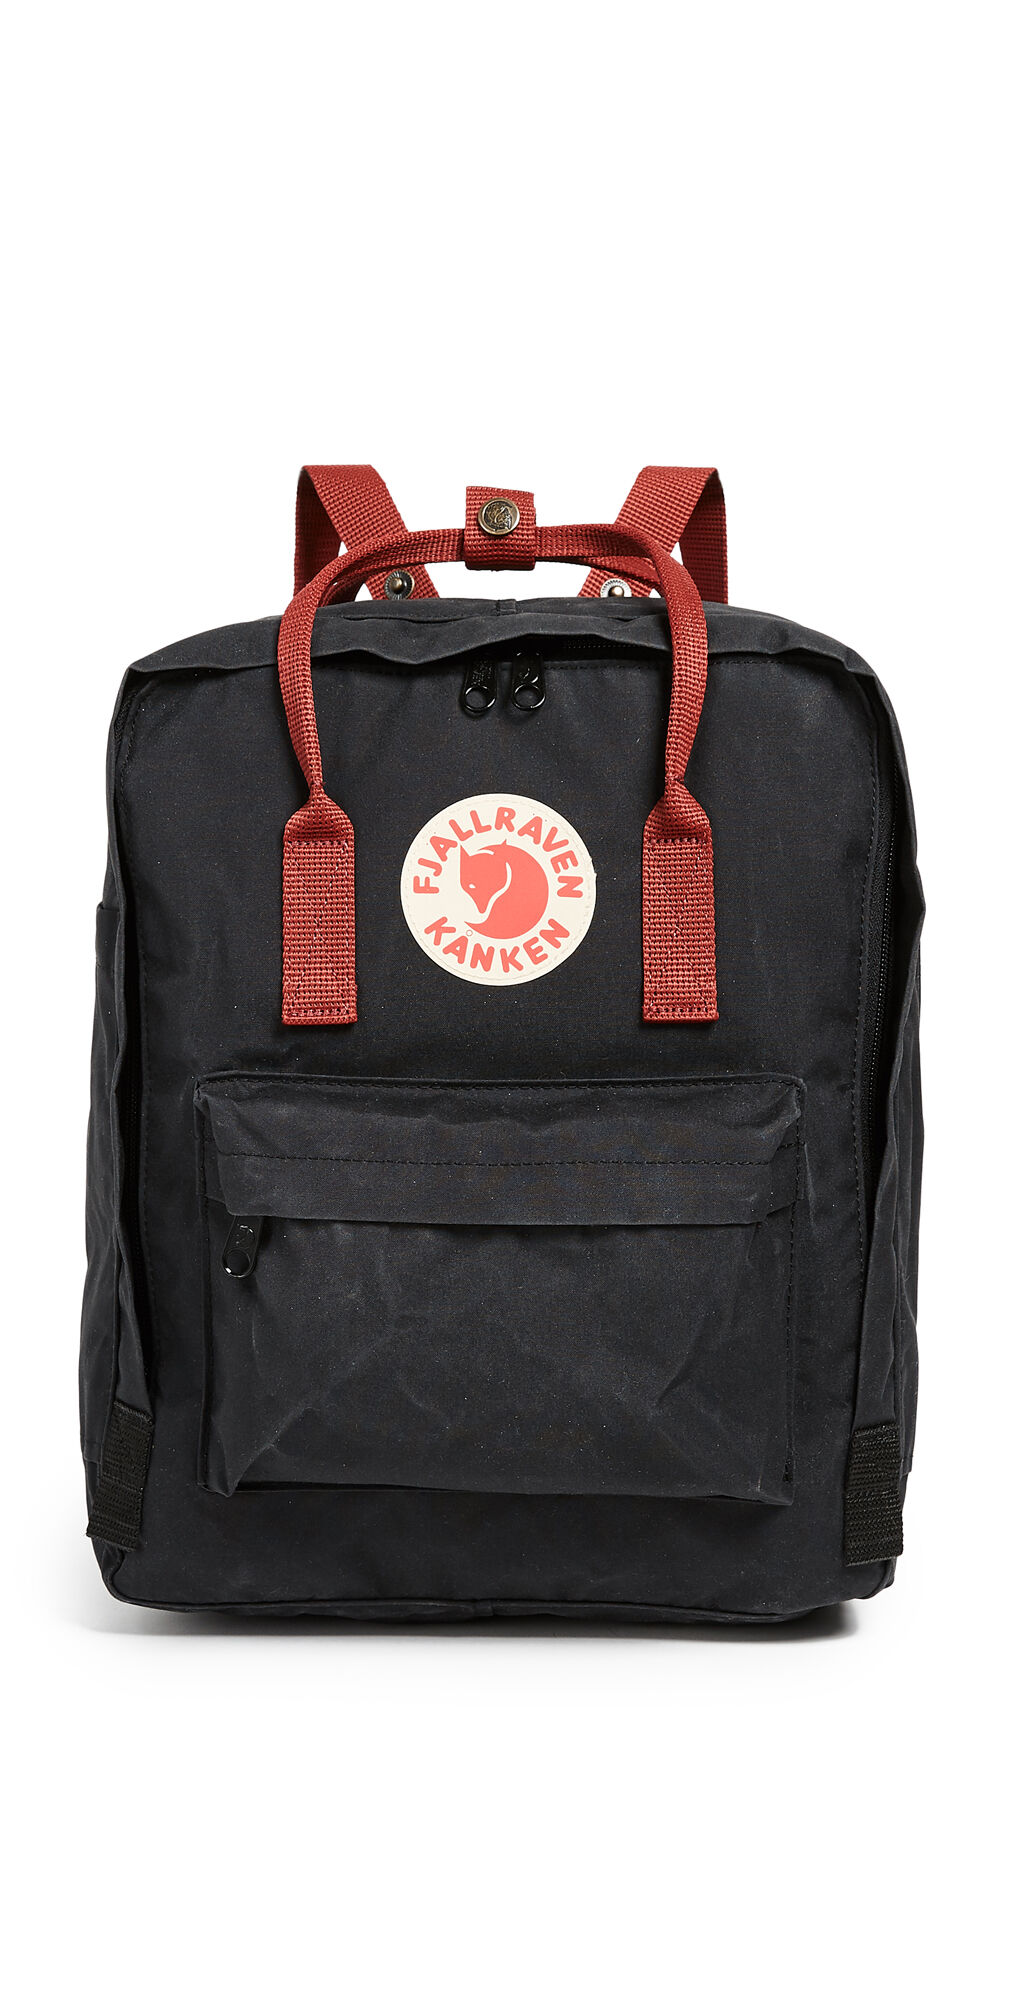 Fjallraven Kanken Backpack Black/Ox Red One Size  Black/Ox Red  size:One Size